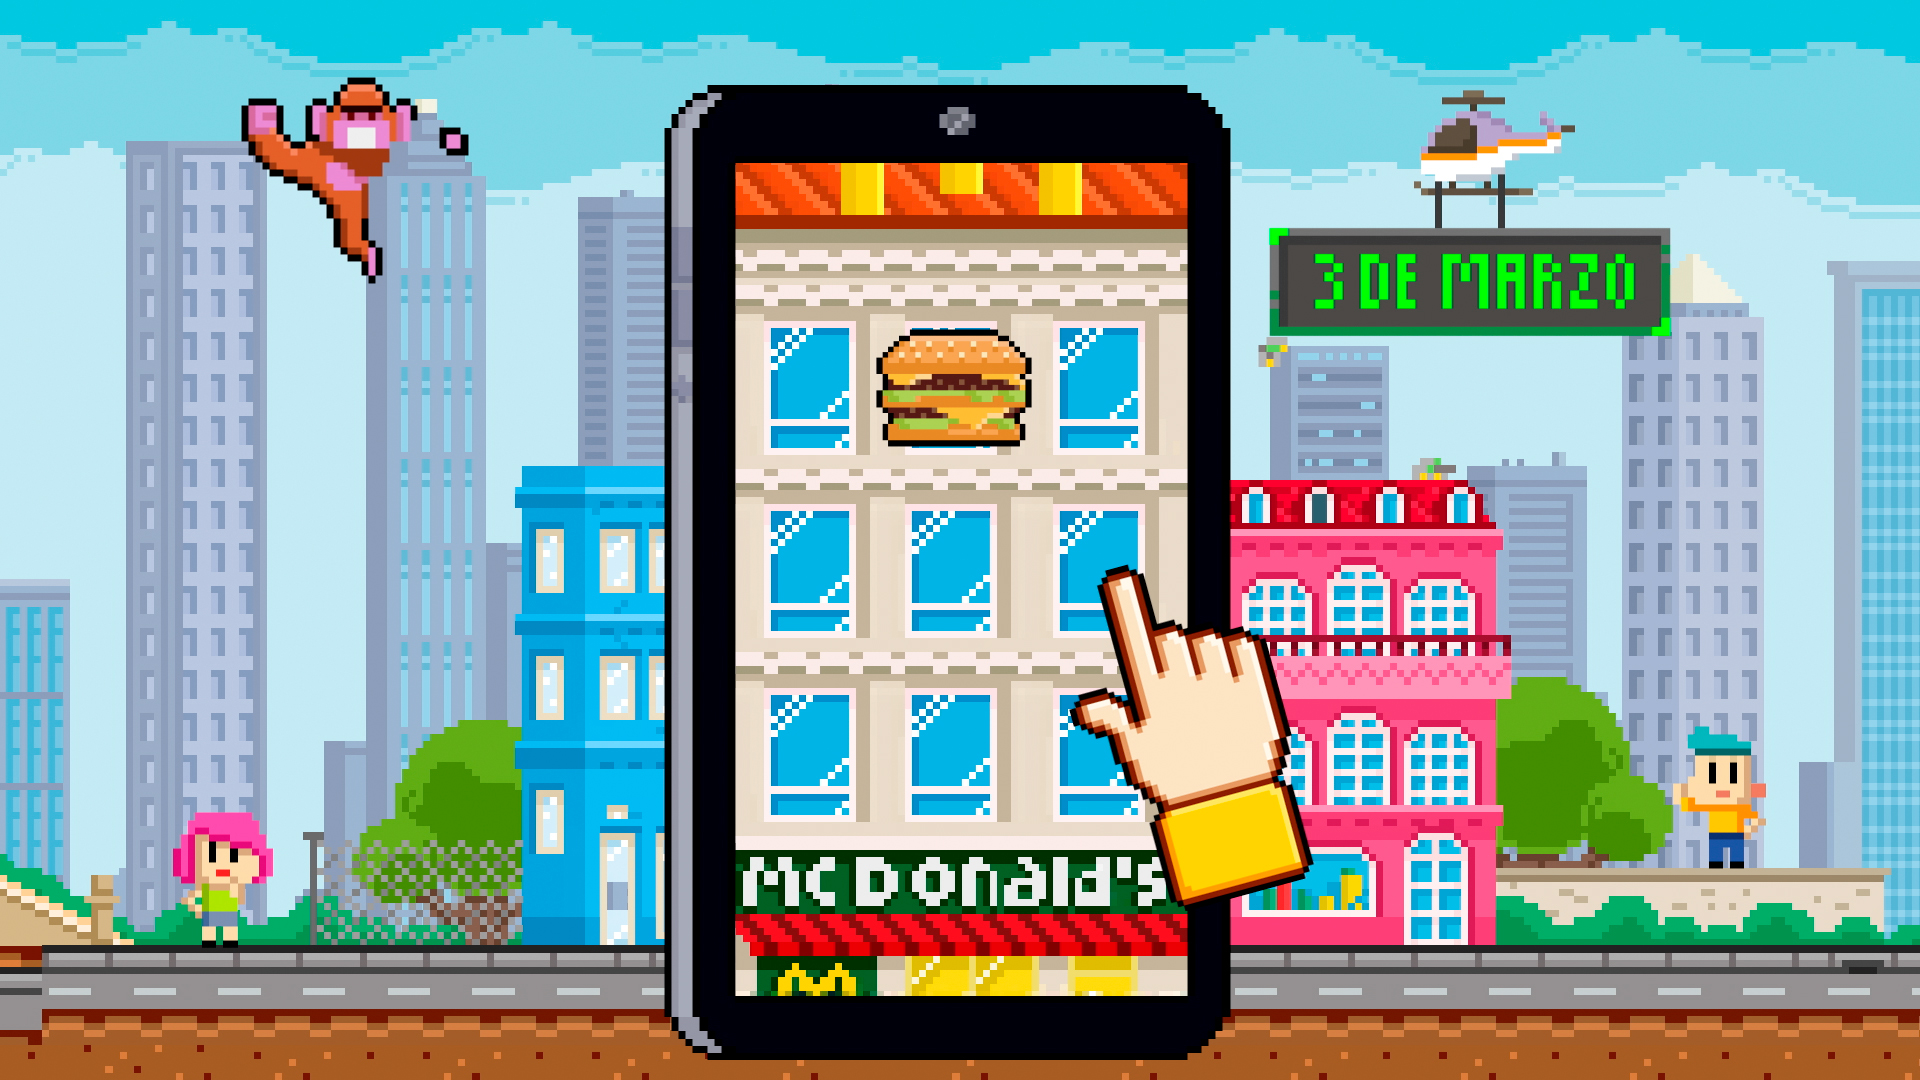 Pieza al pixel para la campaña de días locos de McDonalds basada en videojuegos clásicos